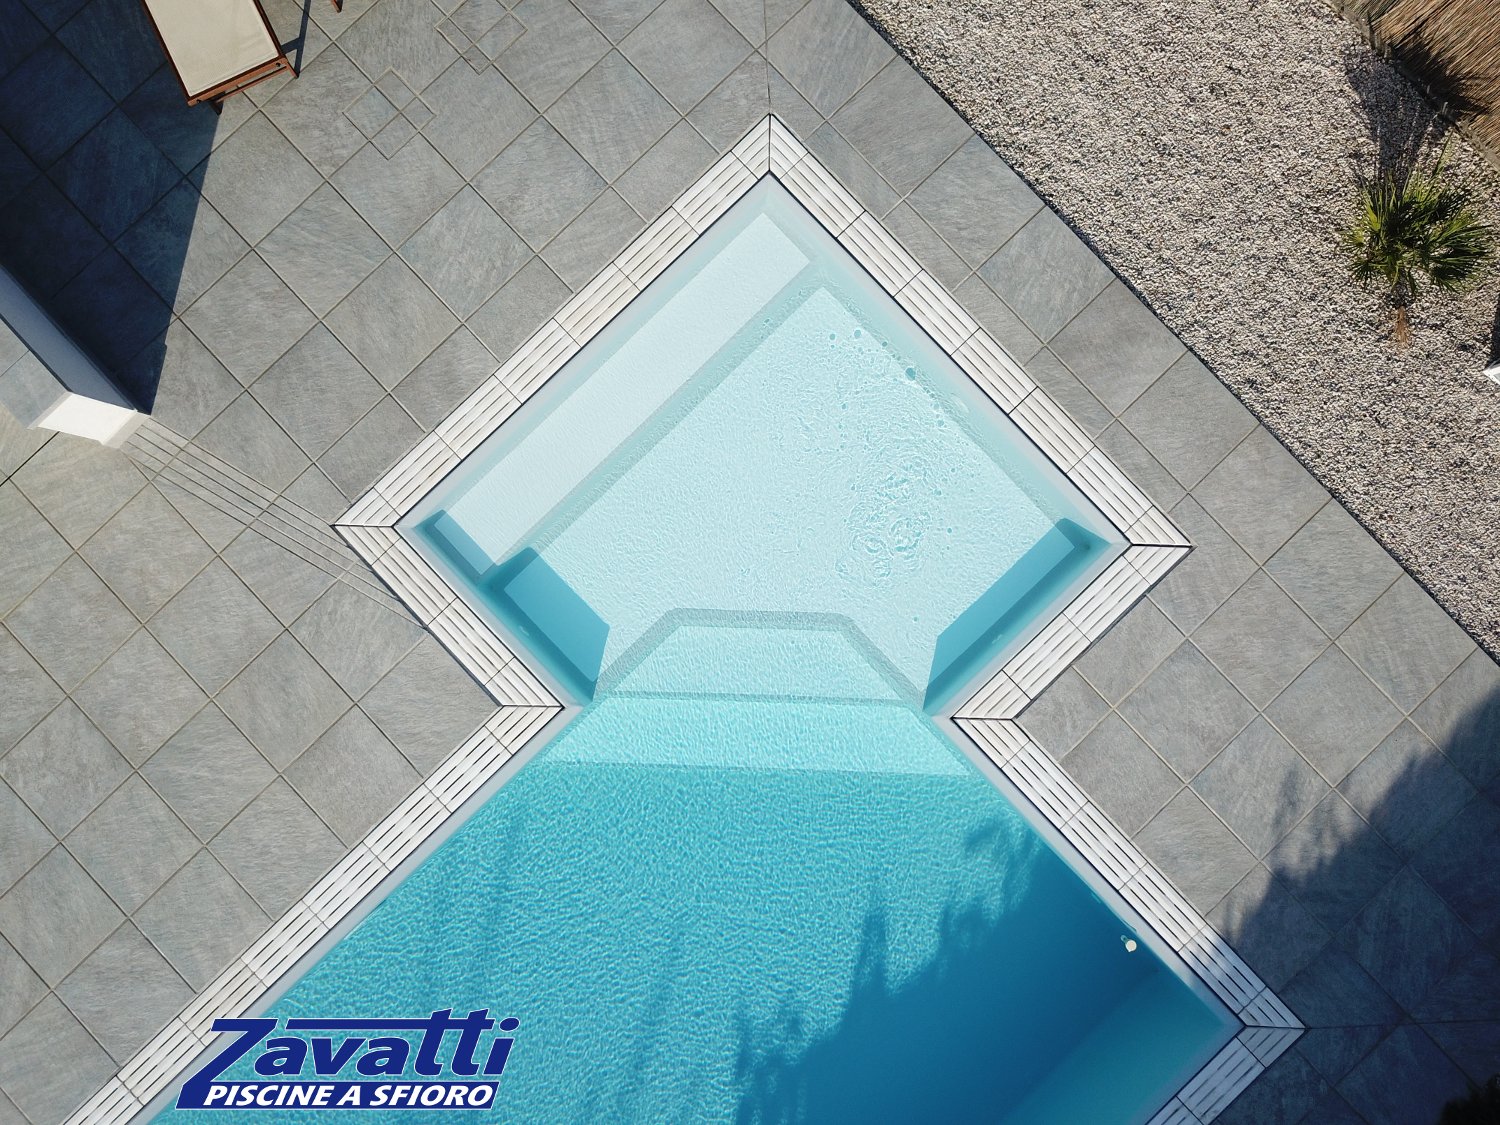 Scalini piscina realizzati con doppio colore. I gradini bicolore permettono di appoggiare in tutta sicurezza i piedi ed evitare problemi di scarsa visibilità sott’acqua